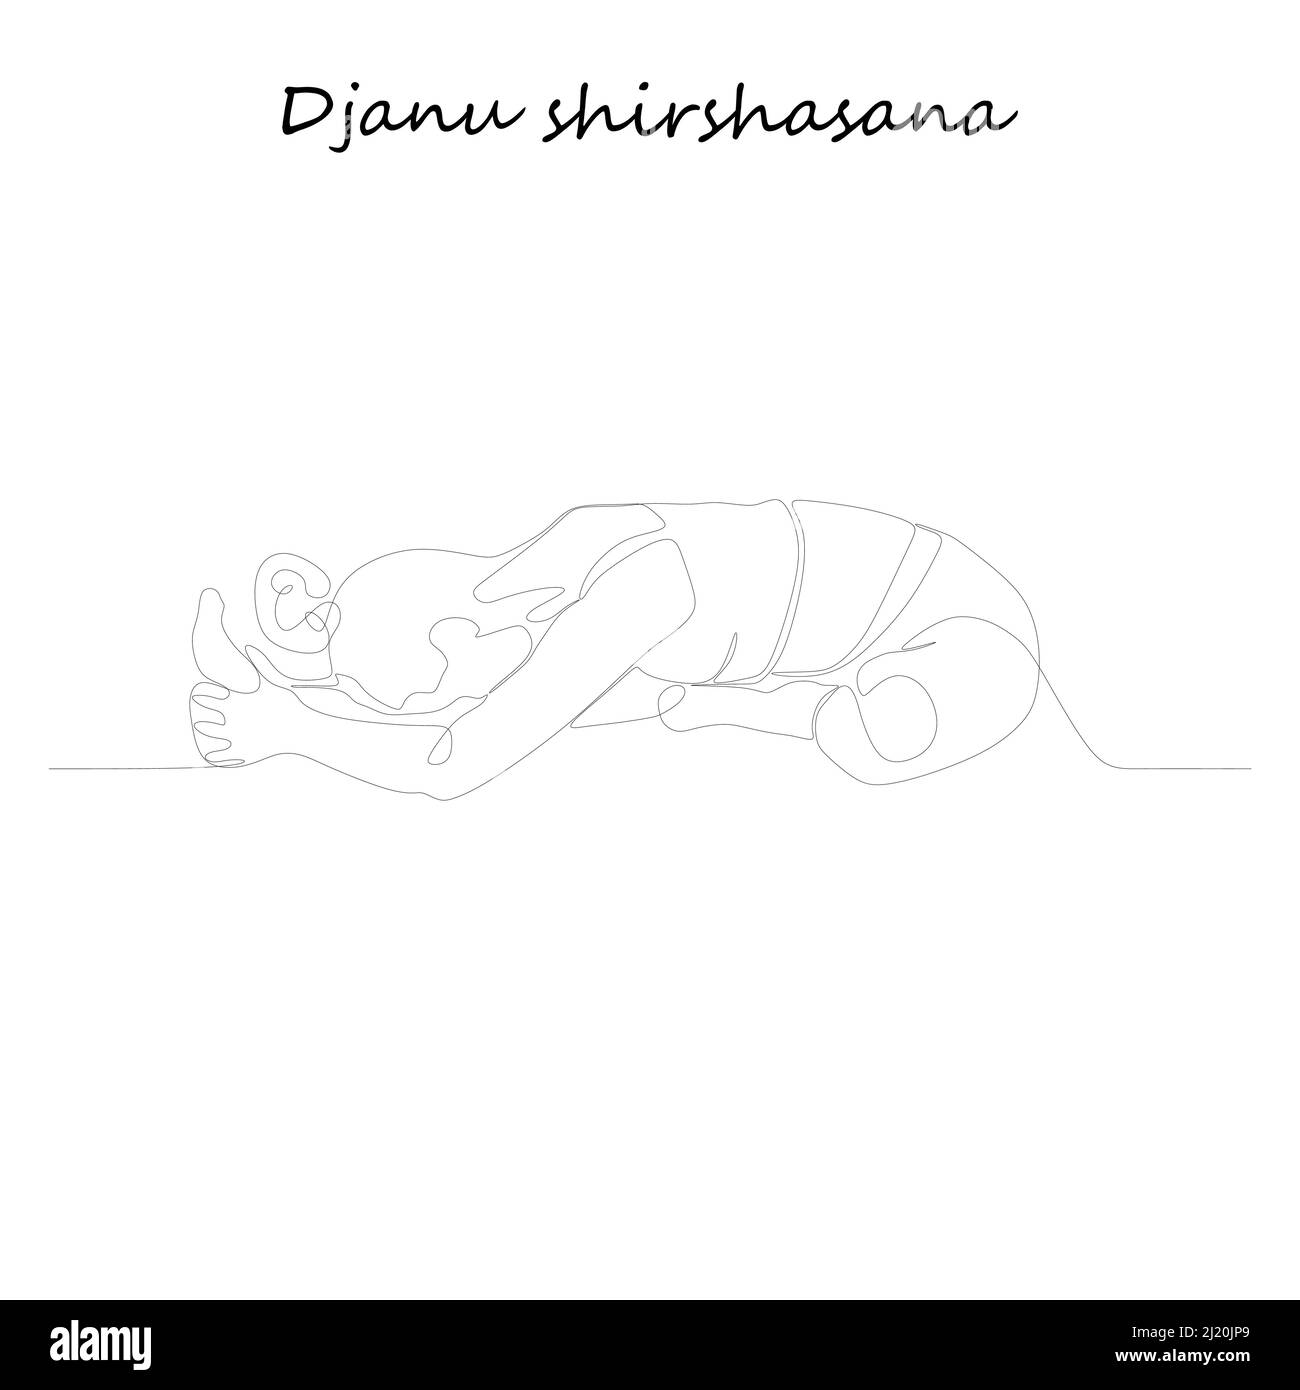 Fortlaufende Linienzeichnung. Junge Frau macht Yoga-Übung, Silhouette Bild. Eine Linie gezeichnete schwarz-weiße Illustration. Djanu shirshasana Stock Vektor